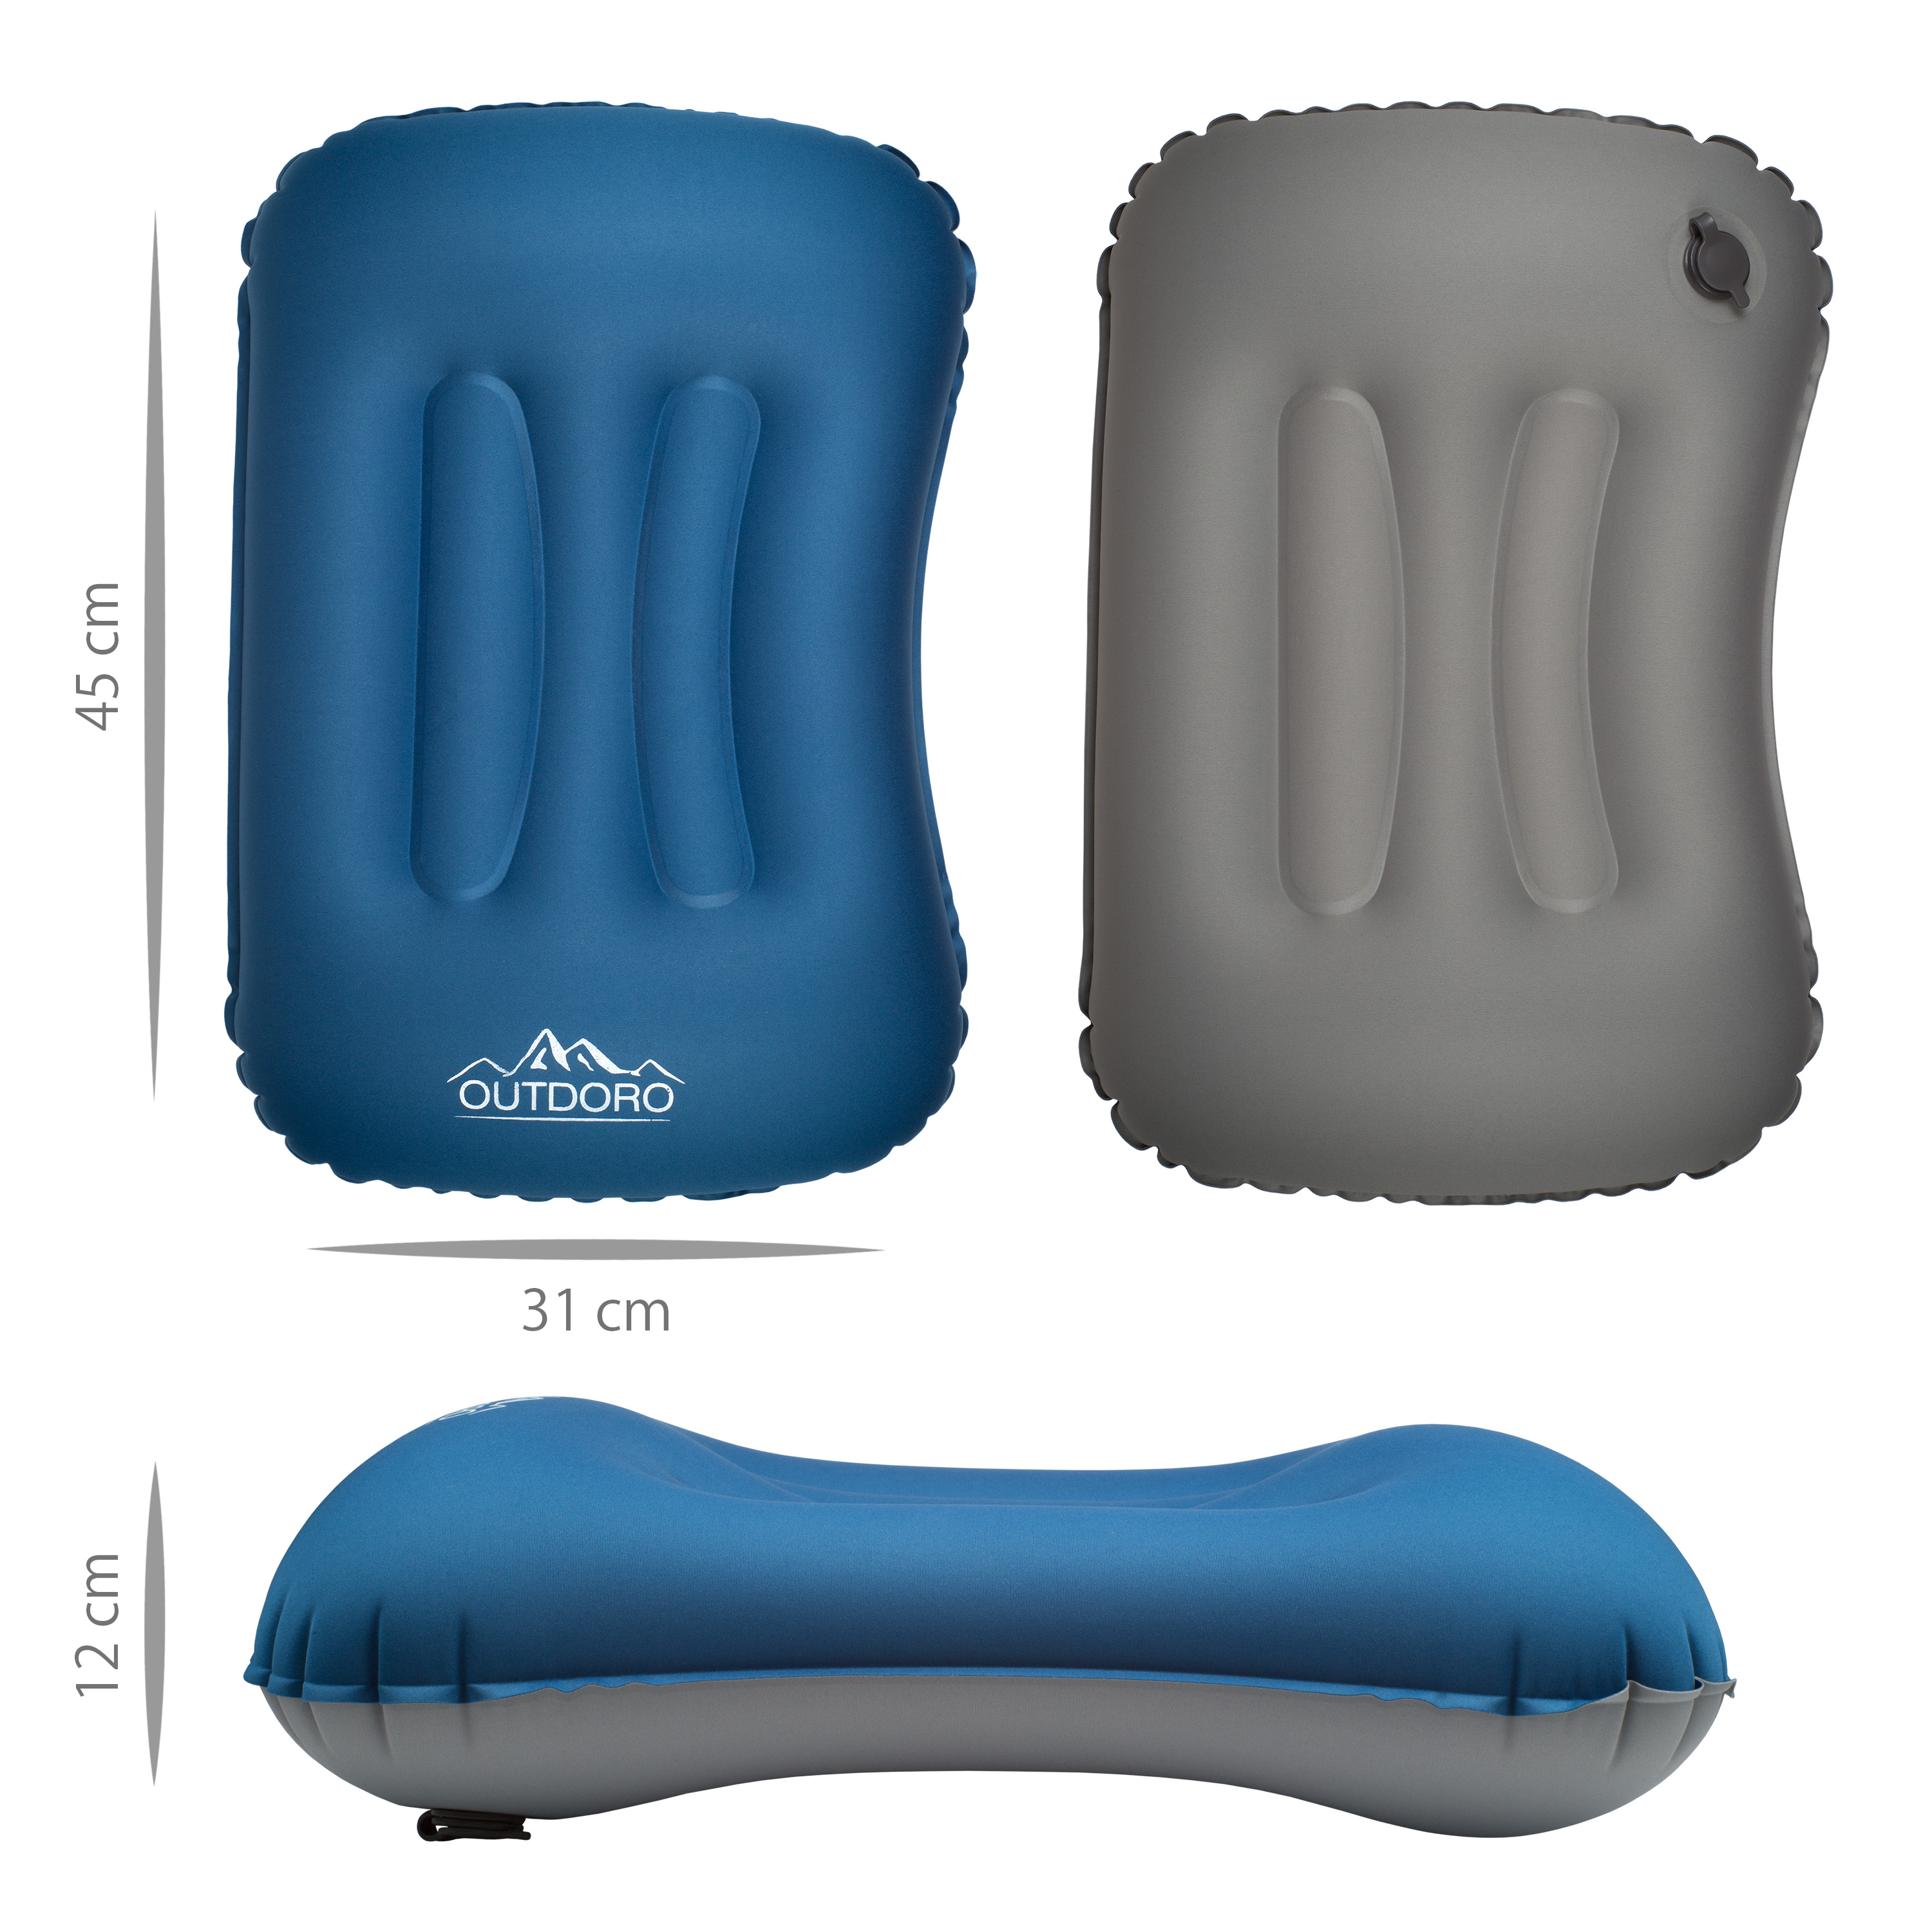 Ultralight Compact Aufblasbare Camping-Kissen Weich Compressible Tragbare Reise-Luft-Kissen Für Outdoor Camp Sport Wandern Blau 1pc